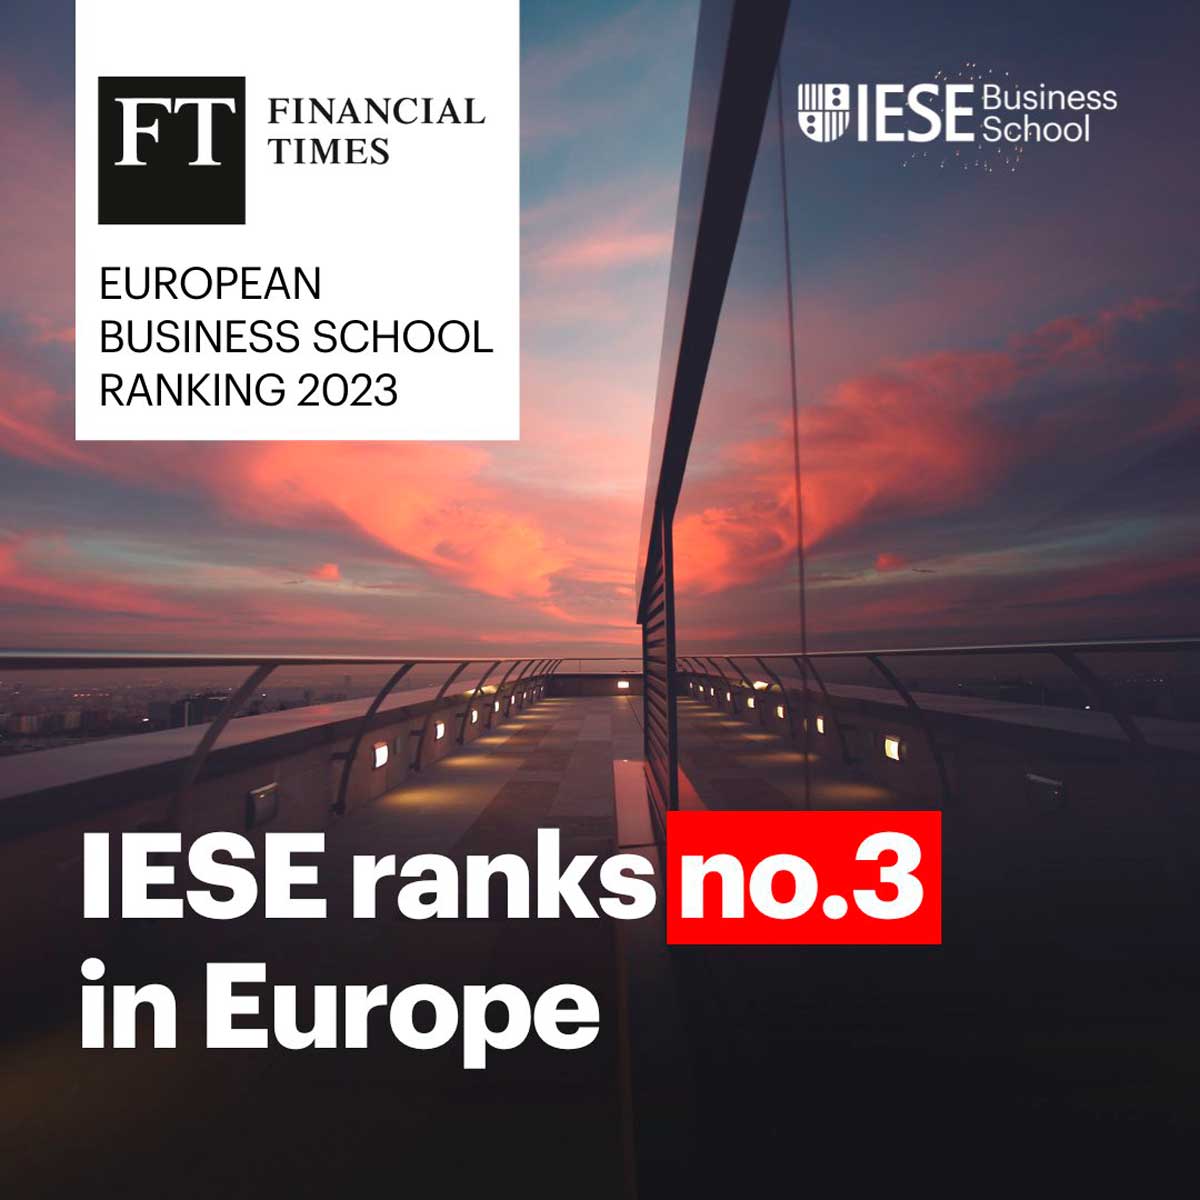 IESE-es-la-tercer-mejor-escuela-de-negocios-en-Europa-segun-FT